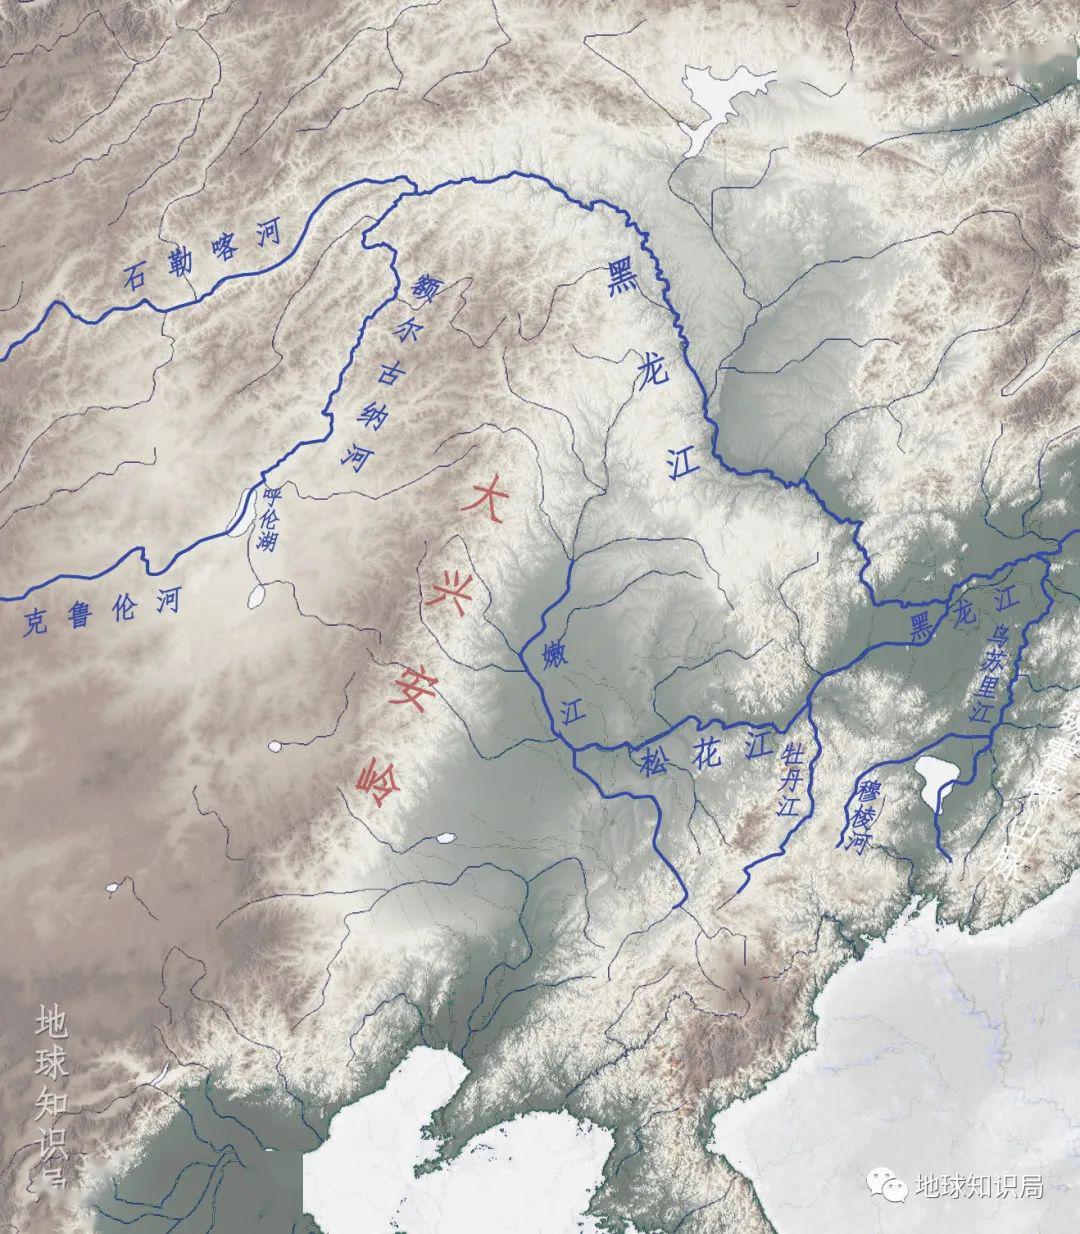 黑龙江河流长多少千米图片